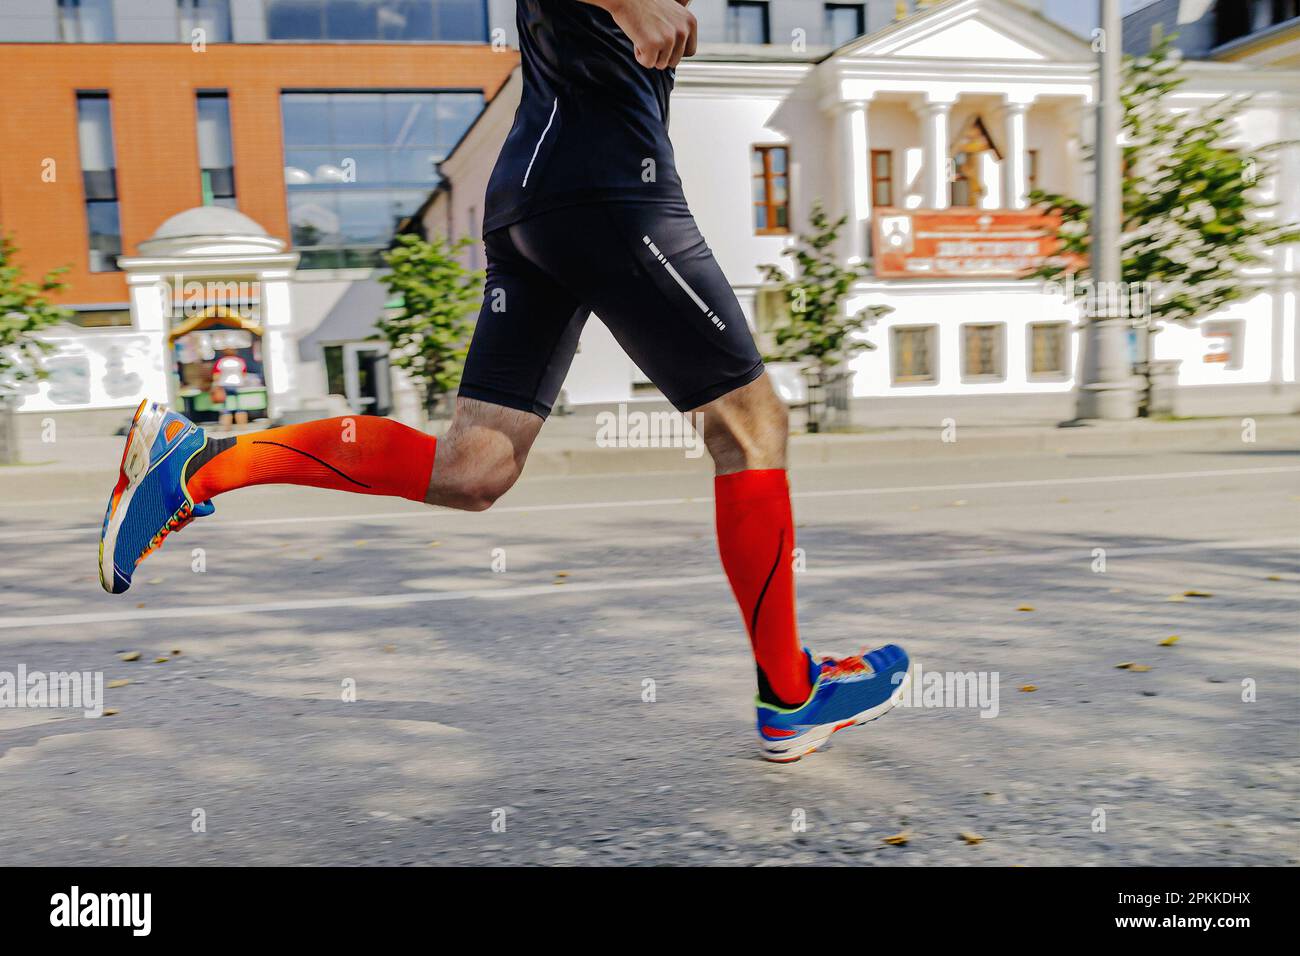 athlète coureur en chaussettes de compression course à pied ville marathon, photos de sport Banque D'Images